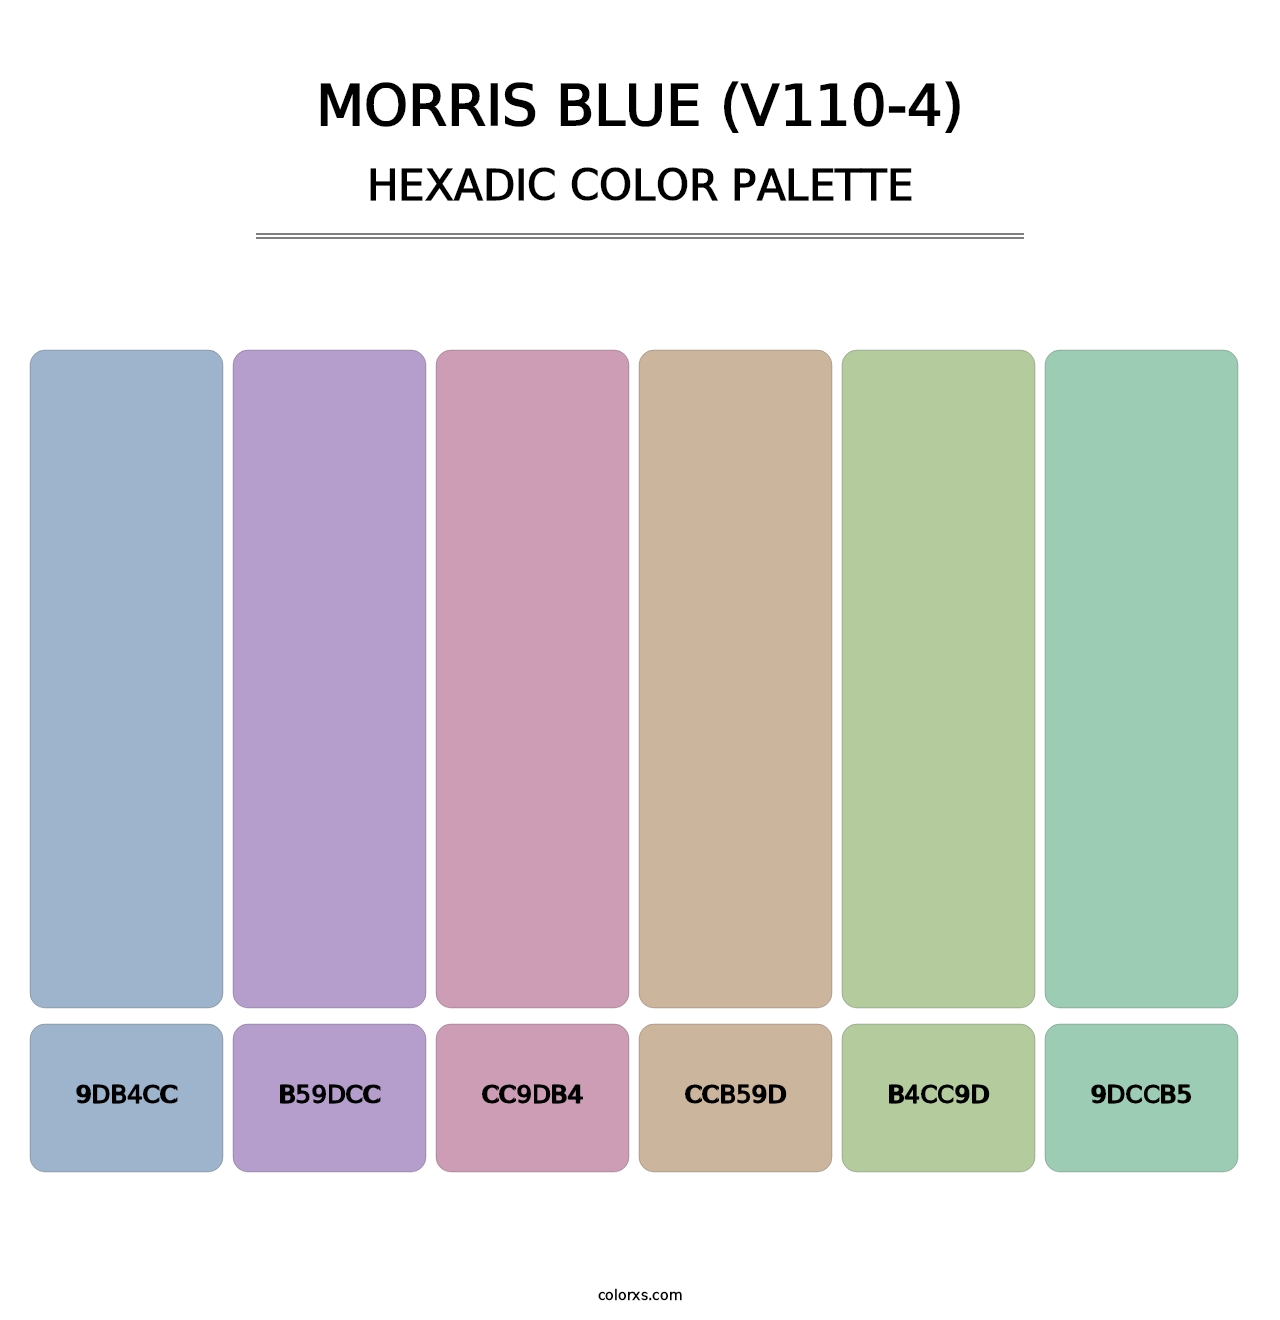 Morris Blue (V110-4) - Hexadic Color Palette